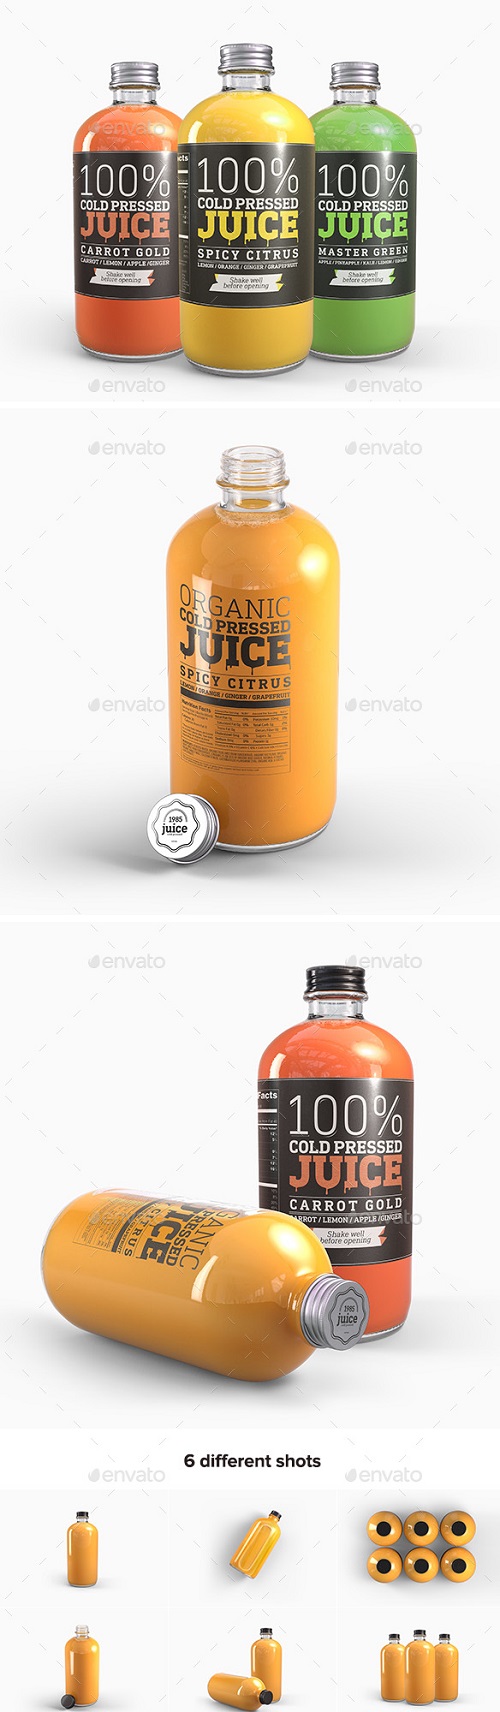 Cold Pressed Juice Glass Bottle Mockup - 19865328